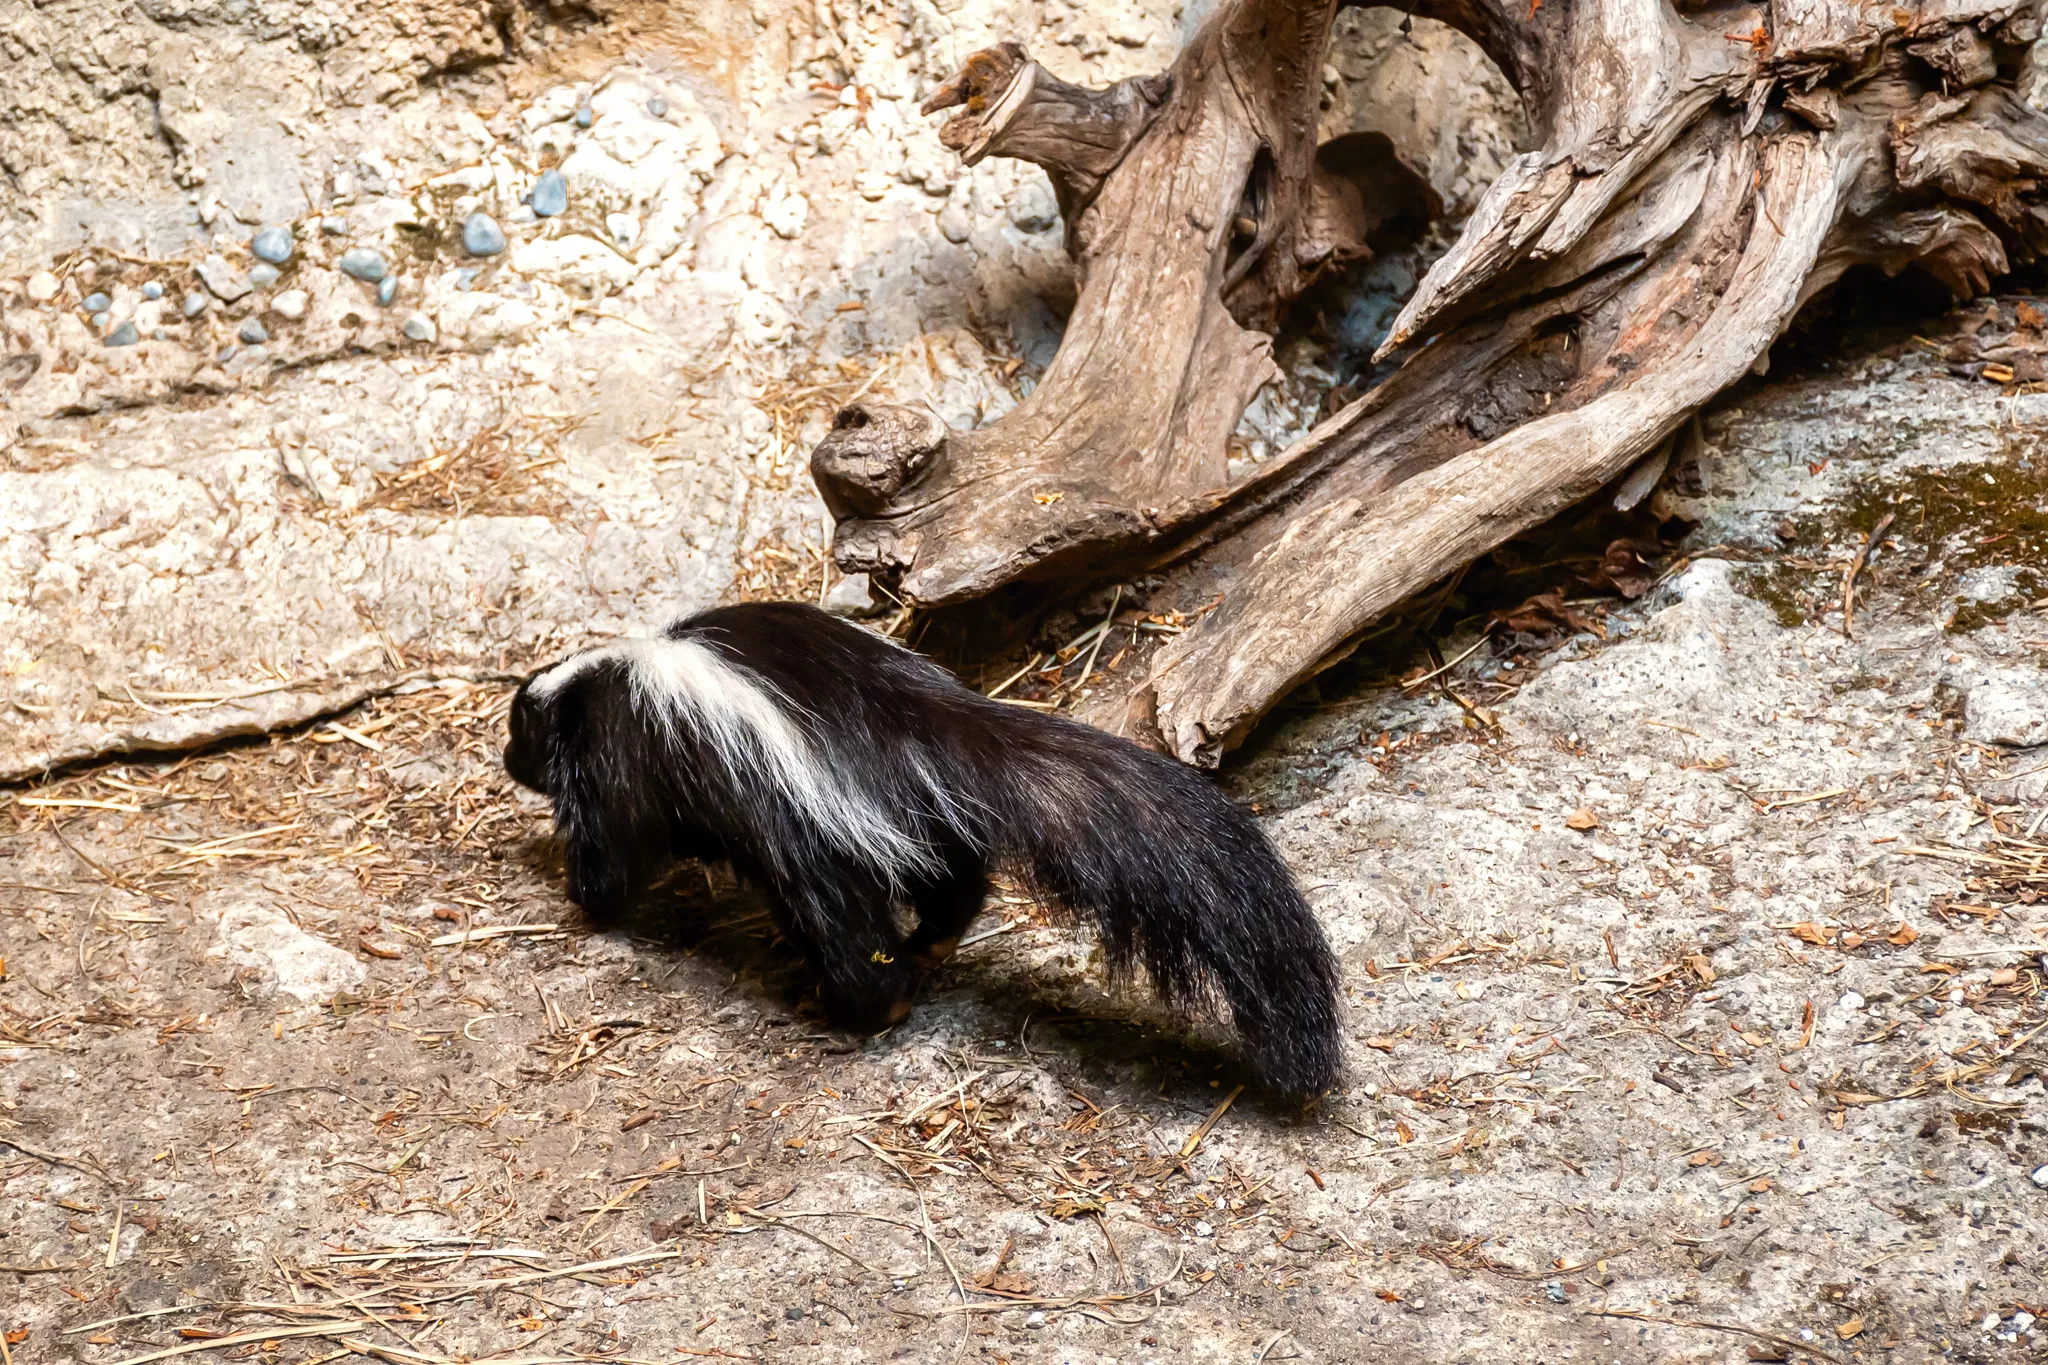 A skunk at Northwest Trek Wildlife Park